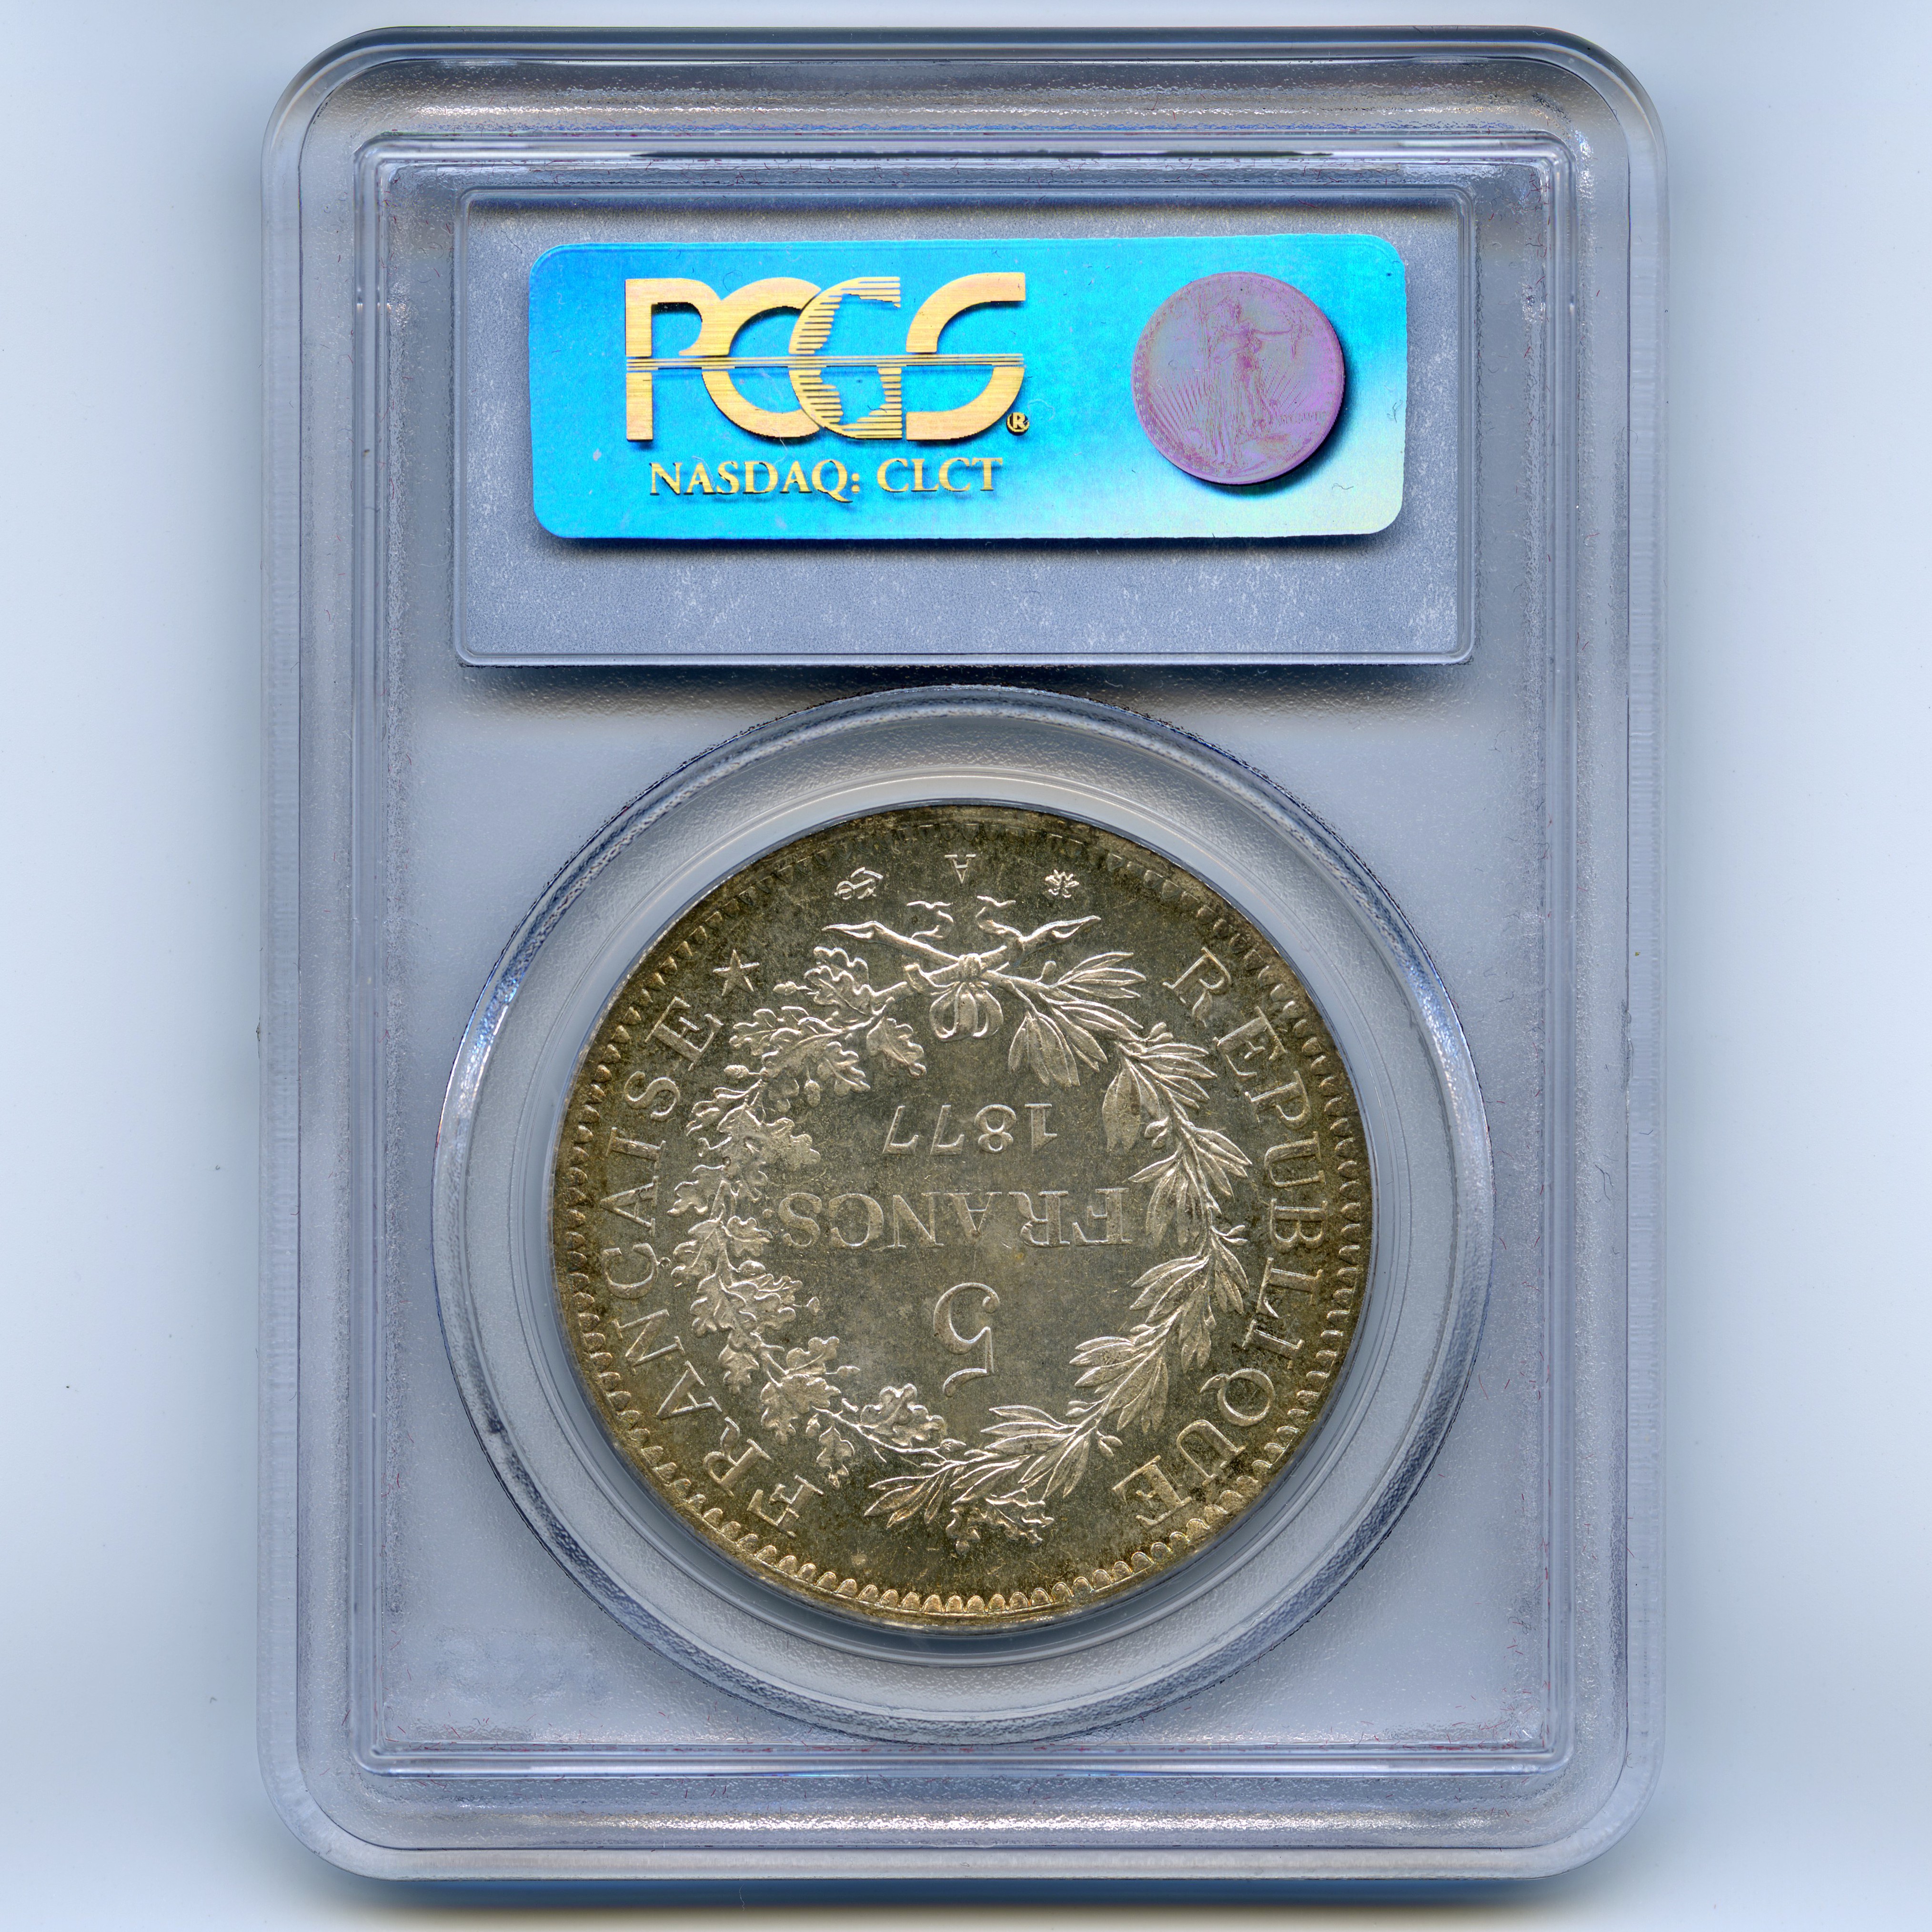 5 Francs - 1877 - Paris revers